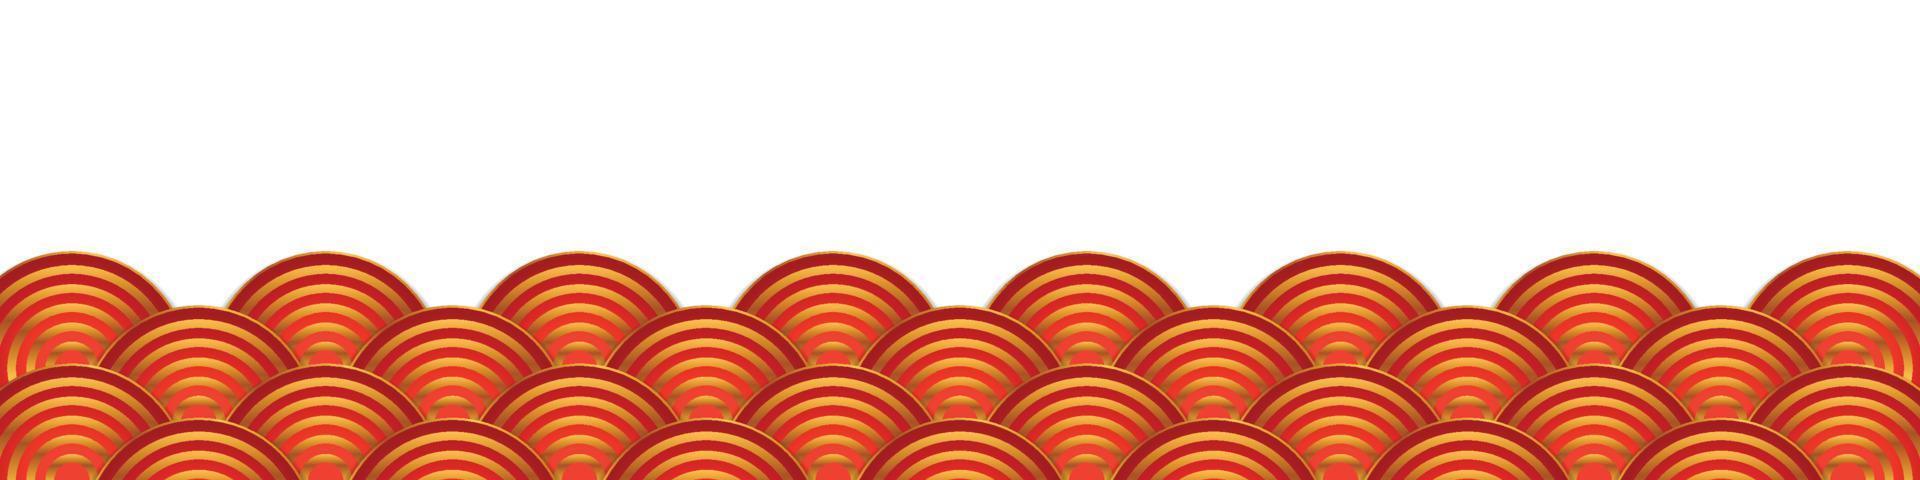 Fondo de patrón de ornamento abstracto rojo chino vector